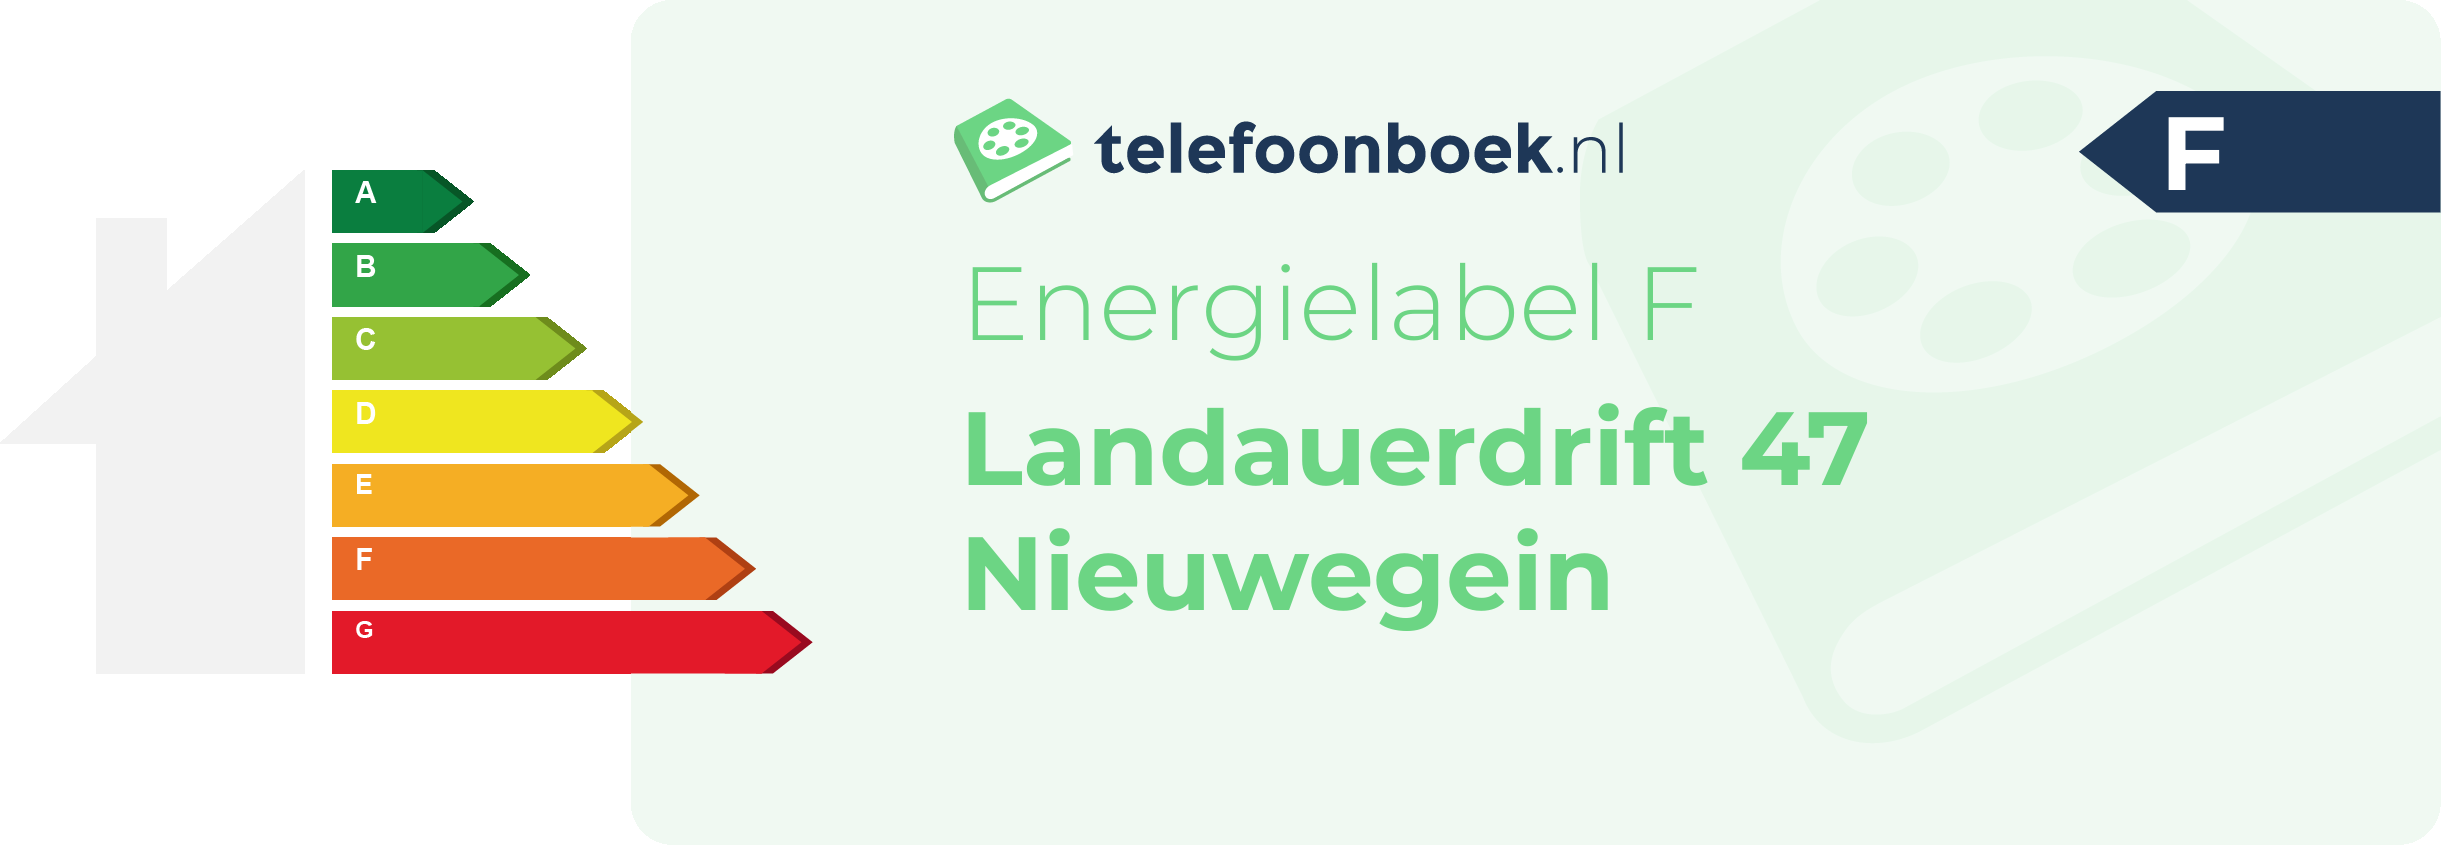 Energielabel Landauerdrift 47 Nieuwegein